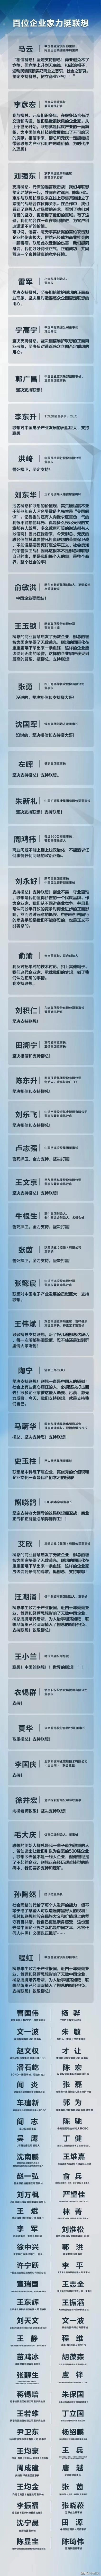 5G公关危机展示了联想柳传志的江湖地位 IT业界 第3张